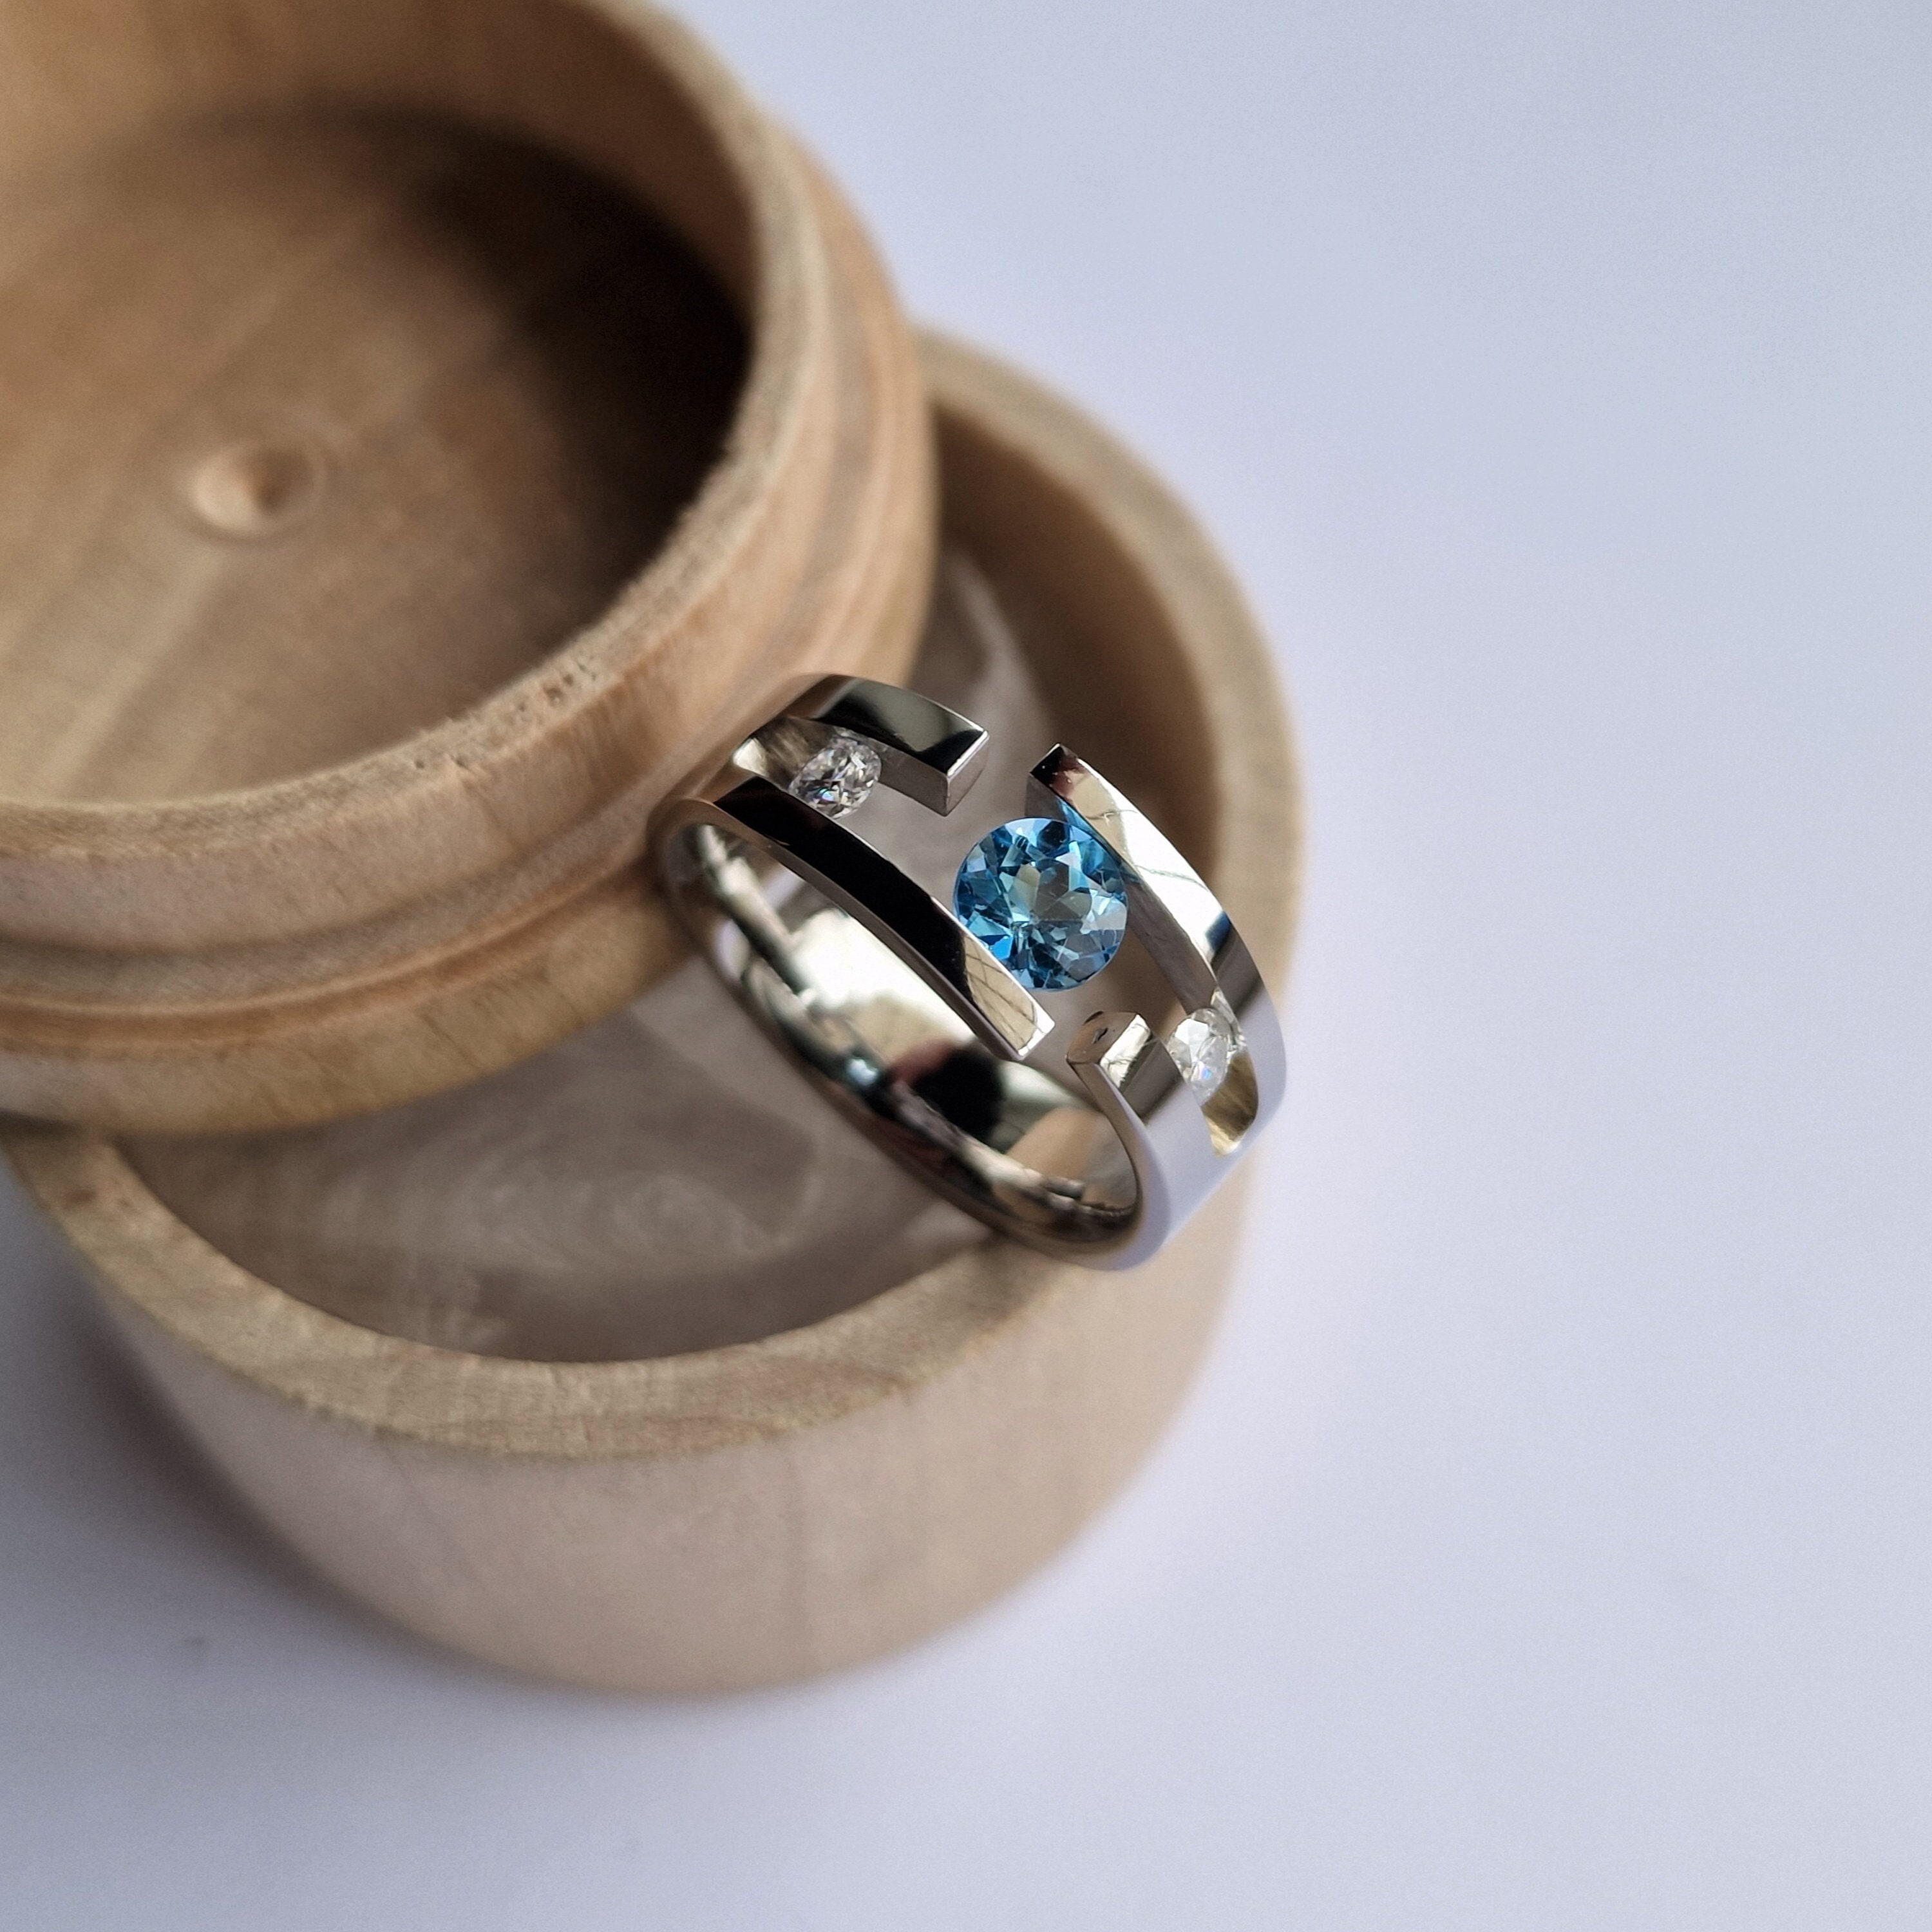 Pipe-Cut Tension Titanium Rings With Round Stones 